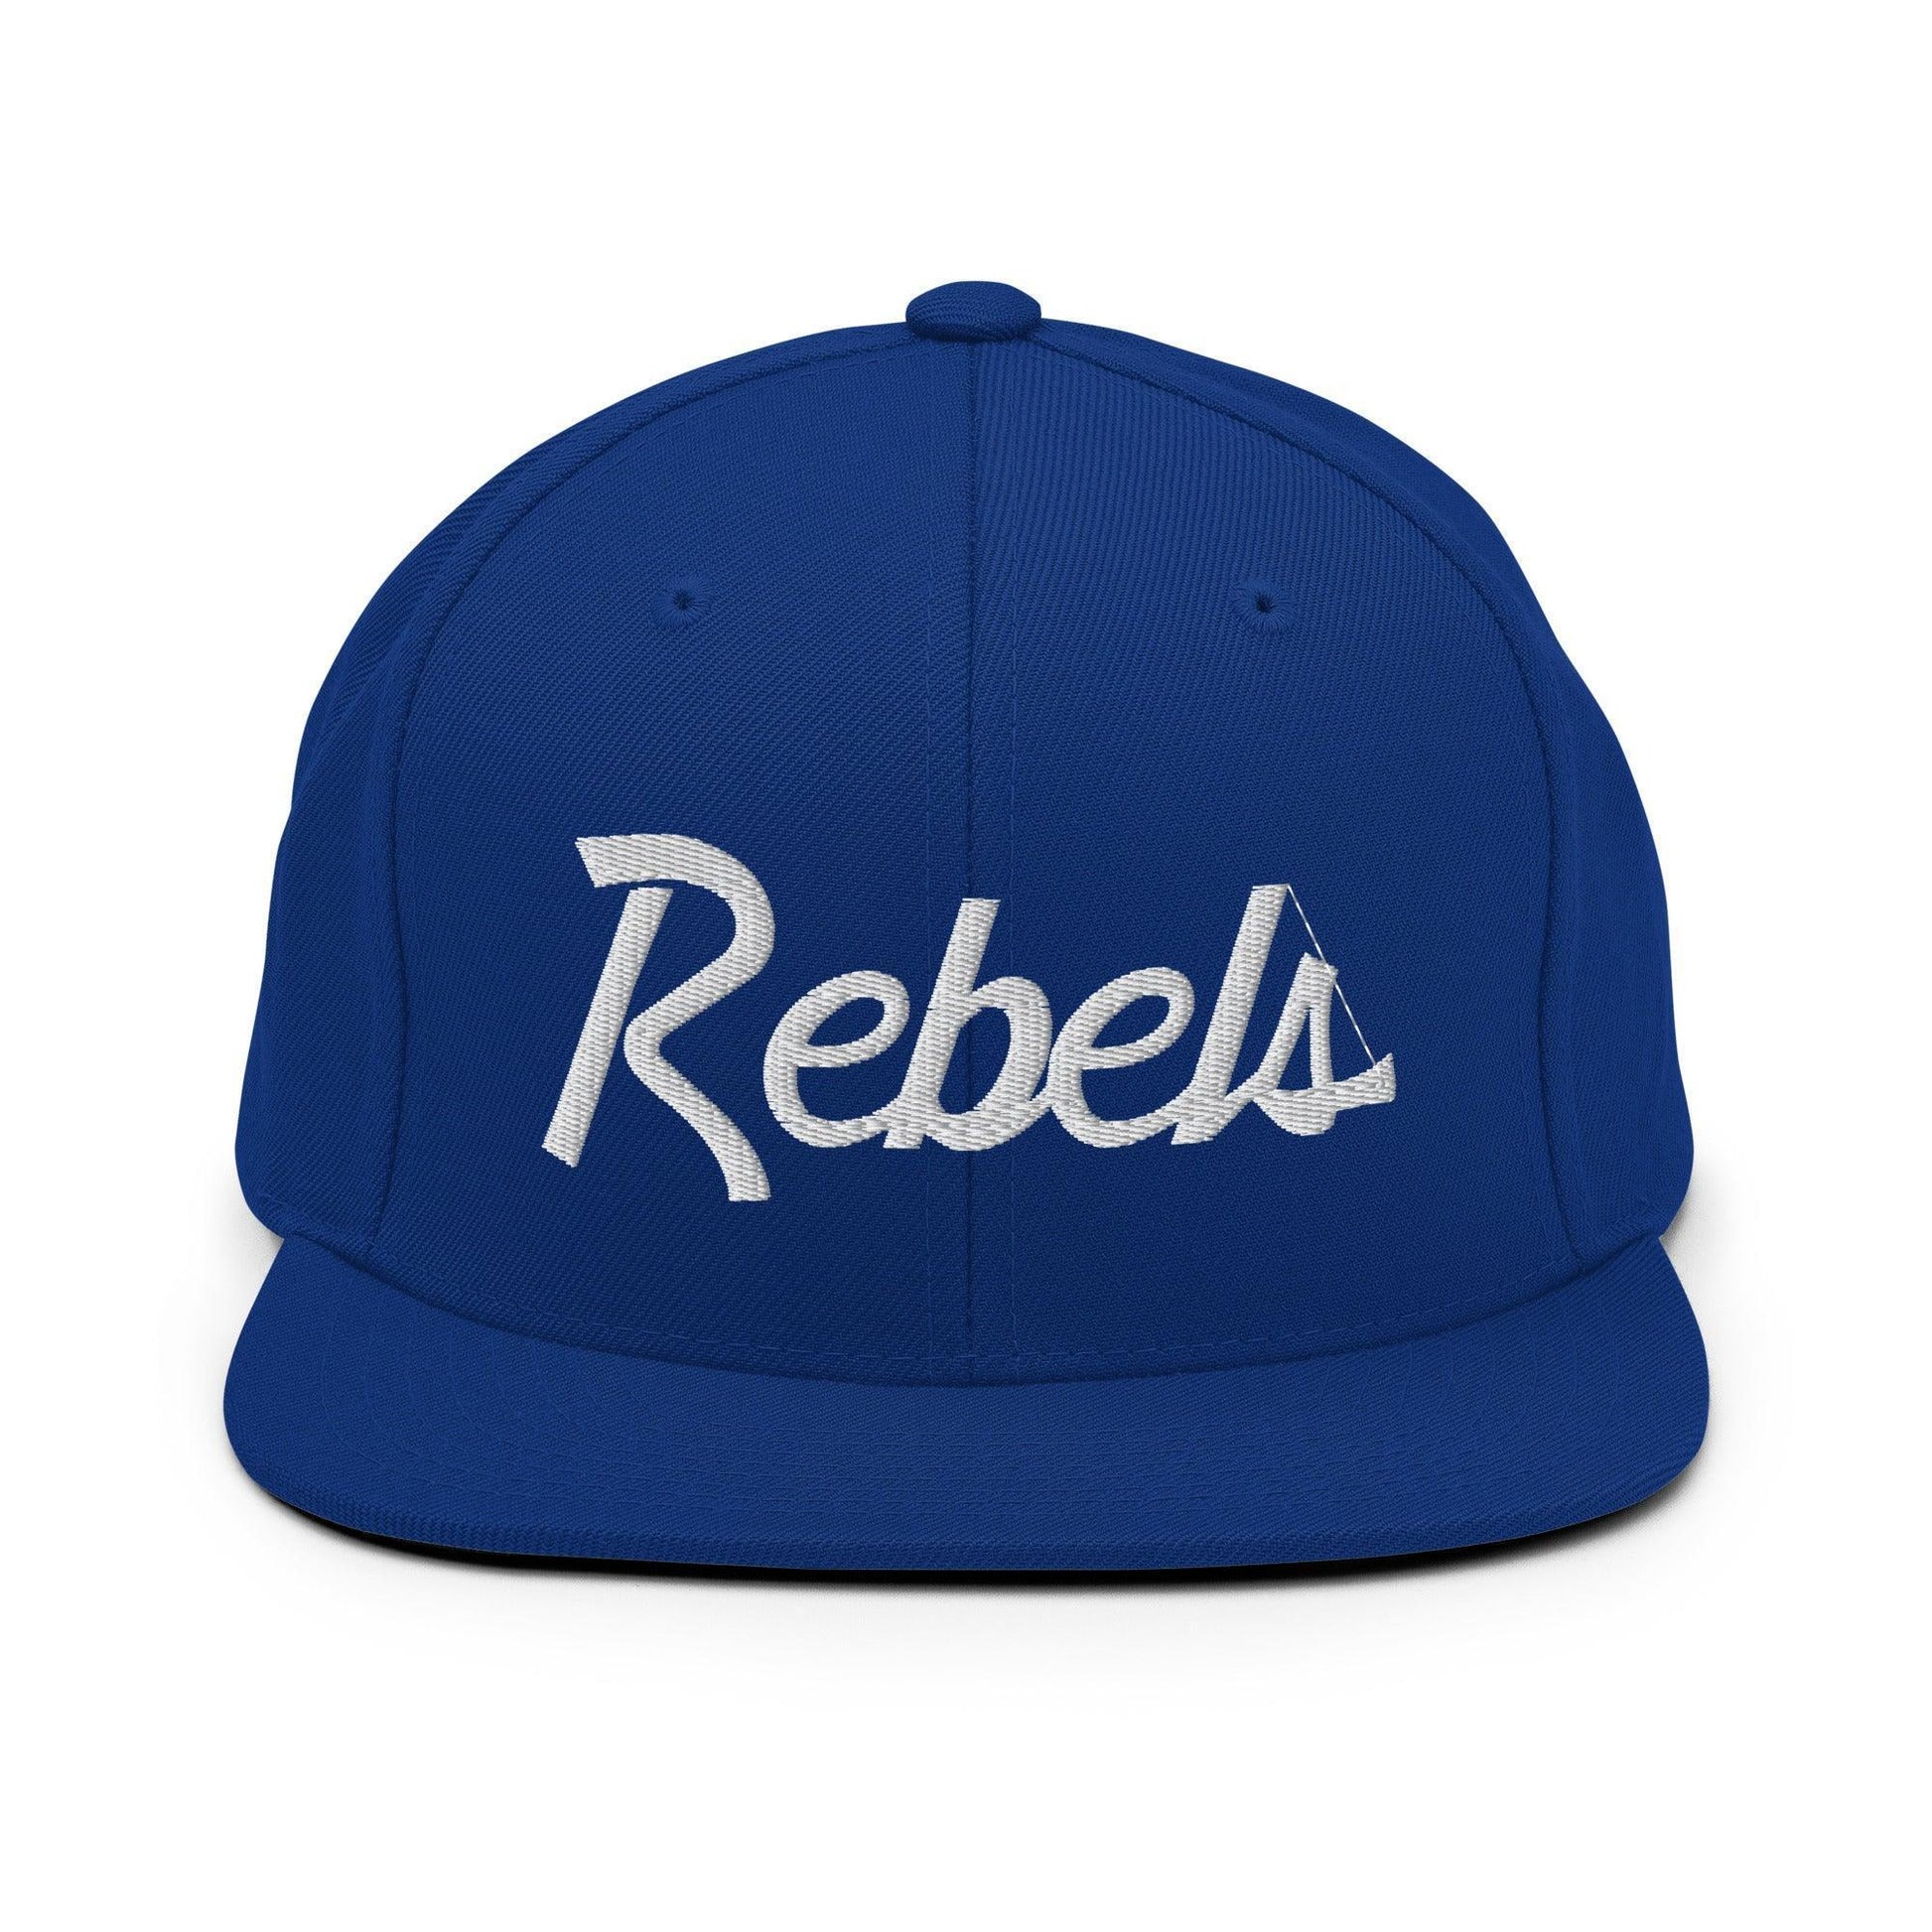 Rebels School Mascot Script Snapback Hat Royal Blue